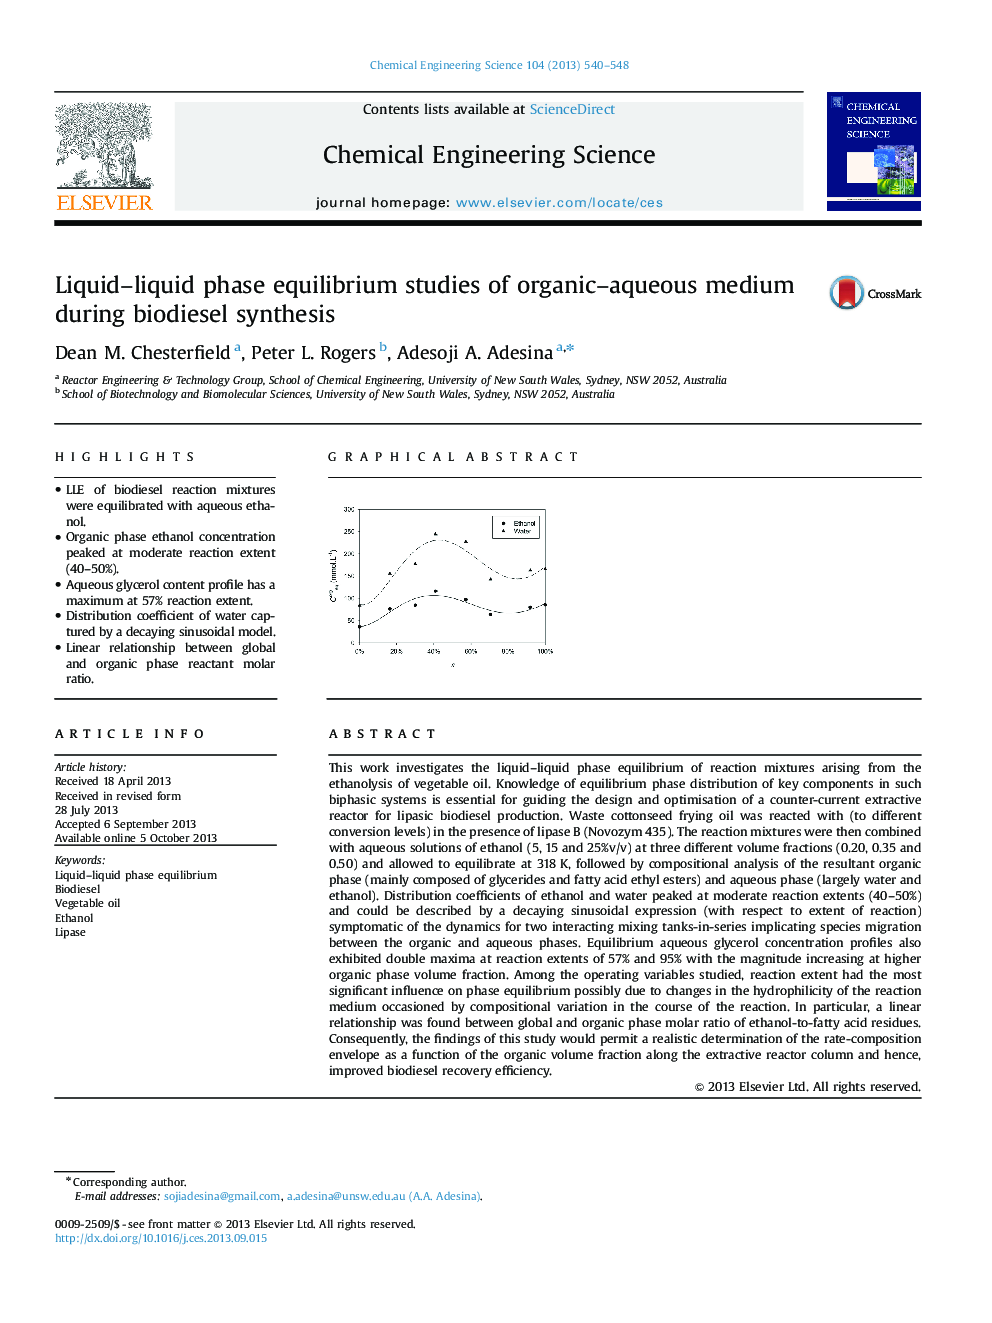 Liquid-liquid phase equilibrium studies of organic-aqueous medium during biodiesel synthesis